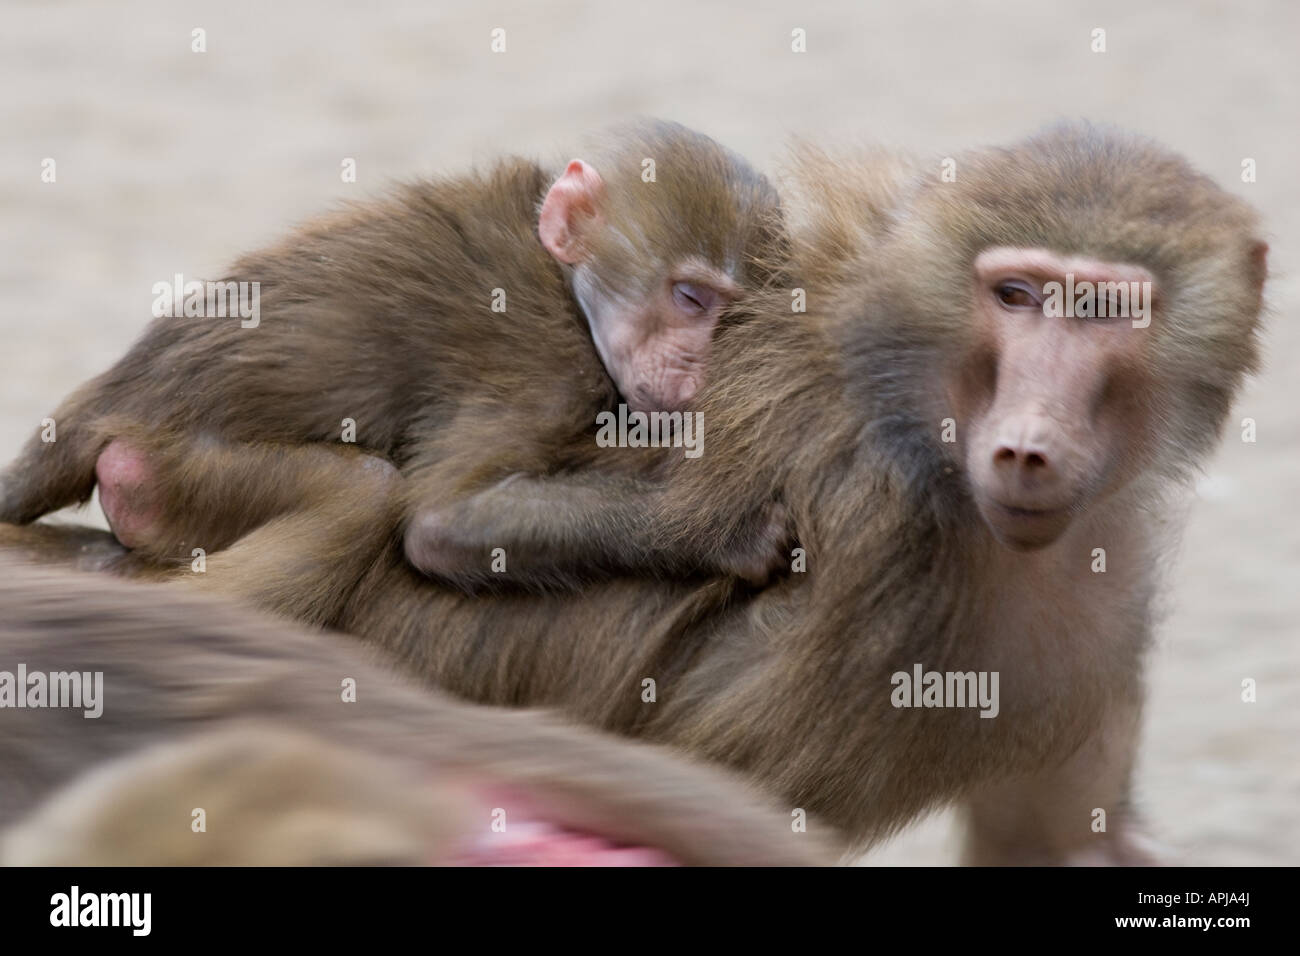 Les babouins Papio hamadryas la mère et l'enfant en cours d'exécution Banque D'Images